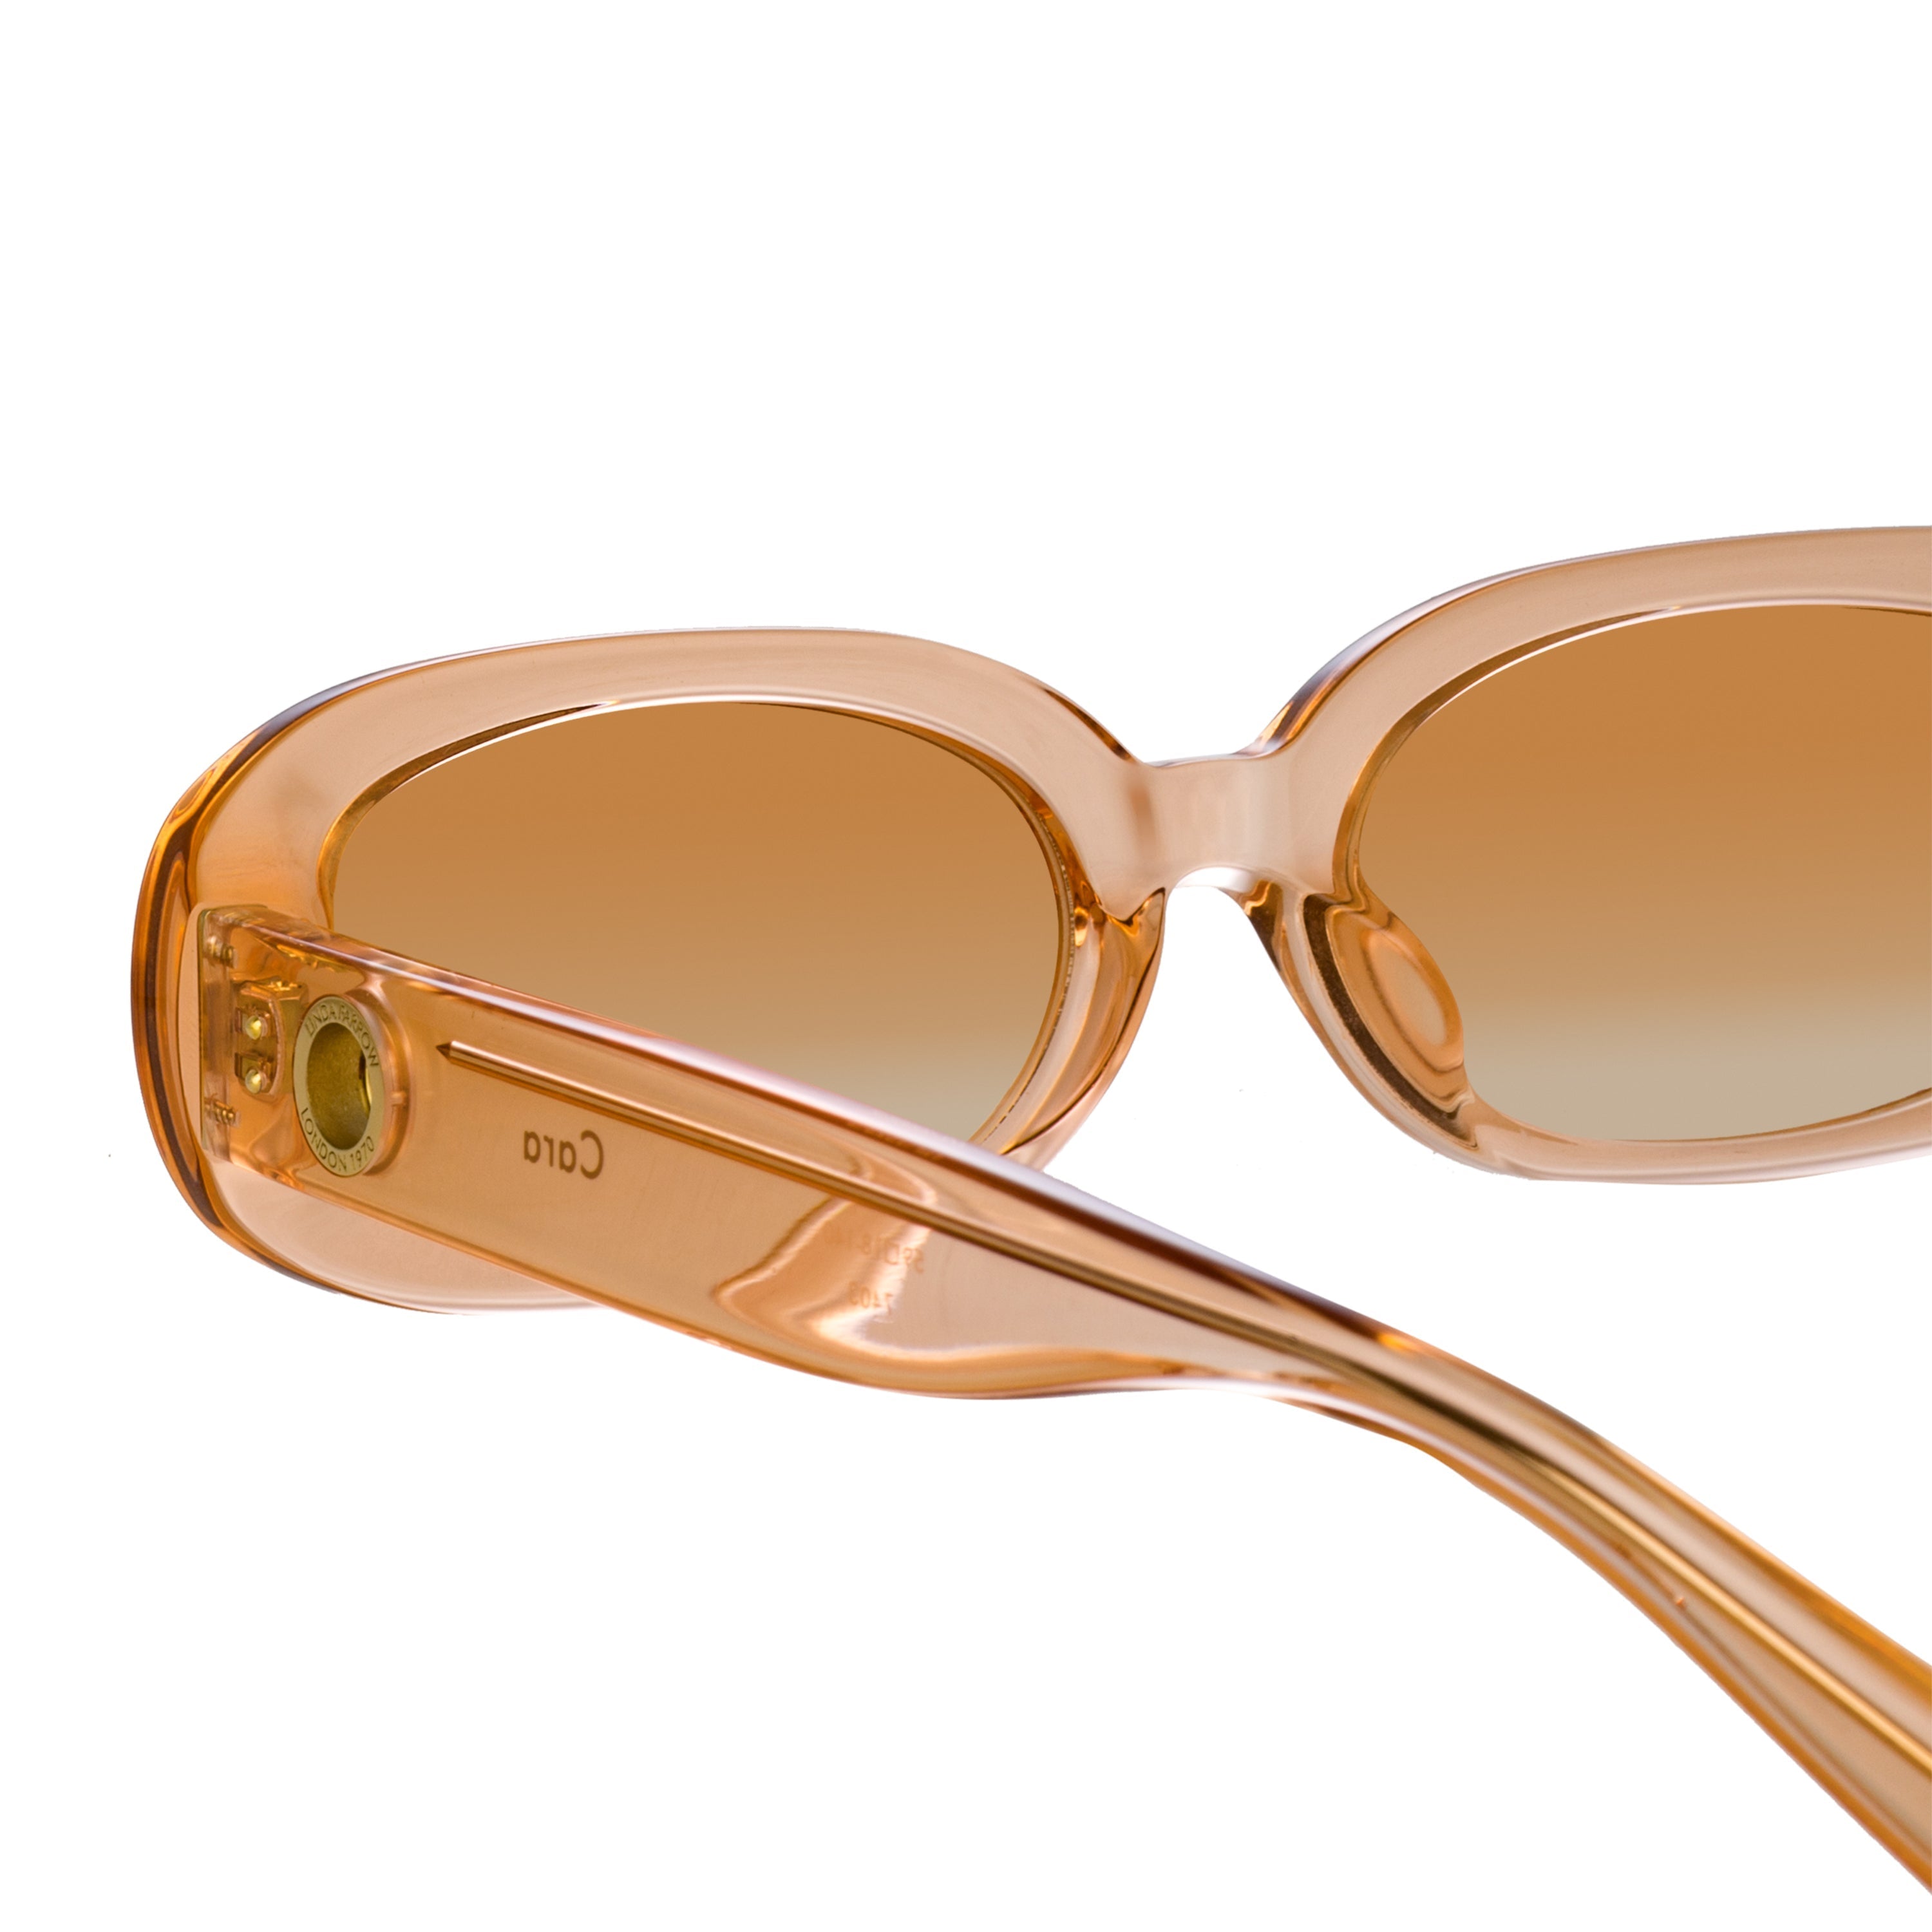 Color_LFL1252C3SUN - Cara Oval Sunglasses in Peach